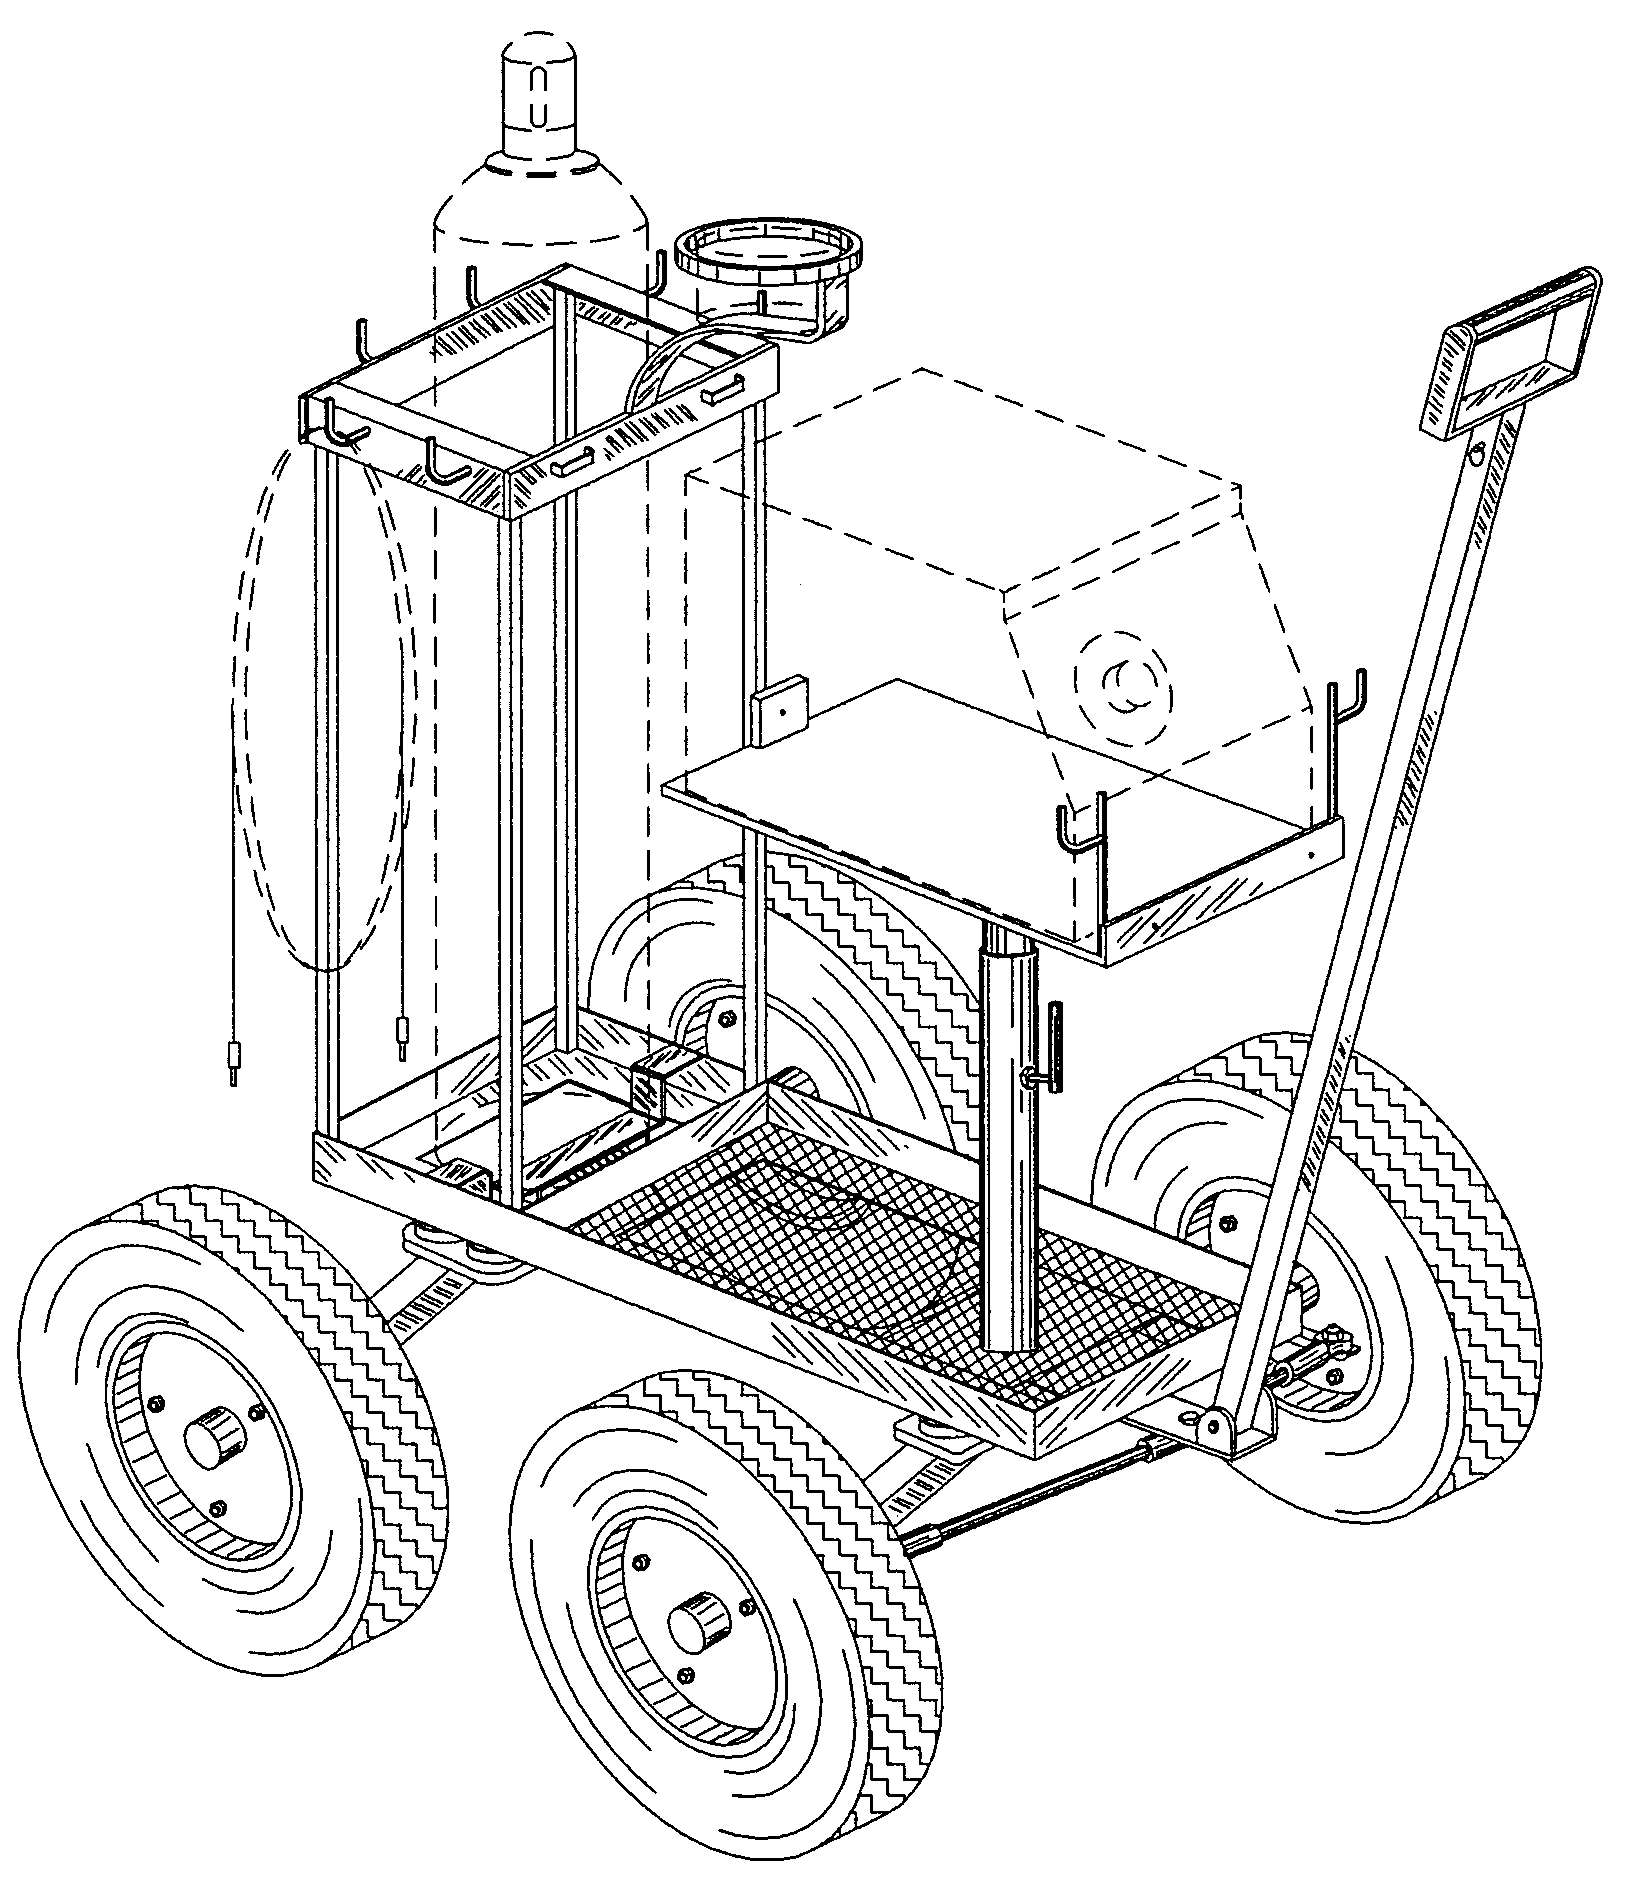 All-terrain welding cart